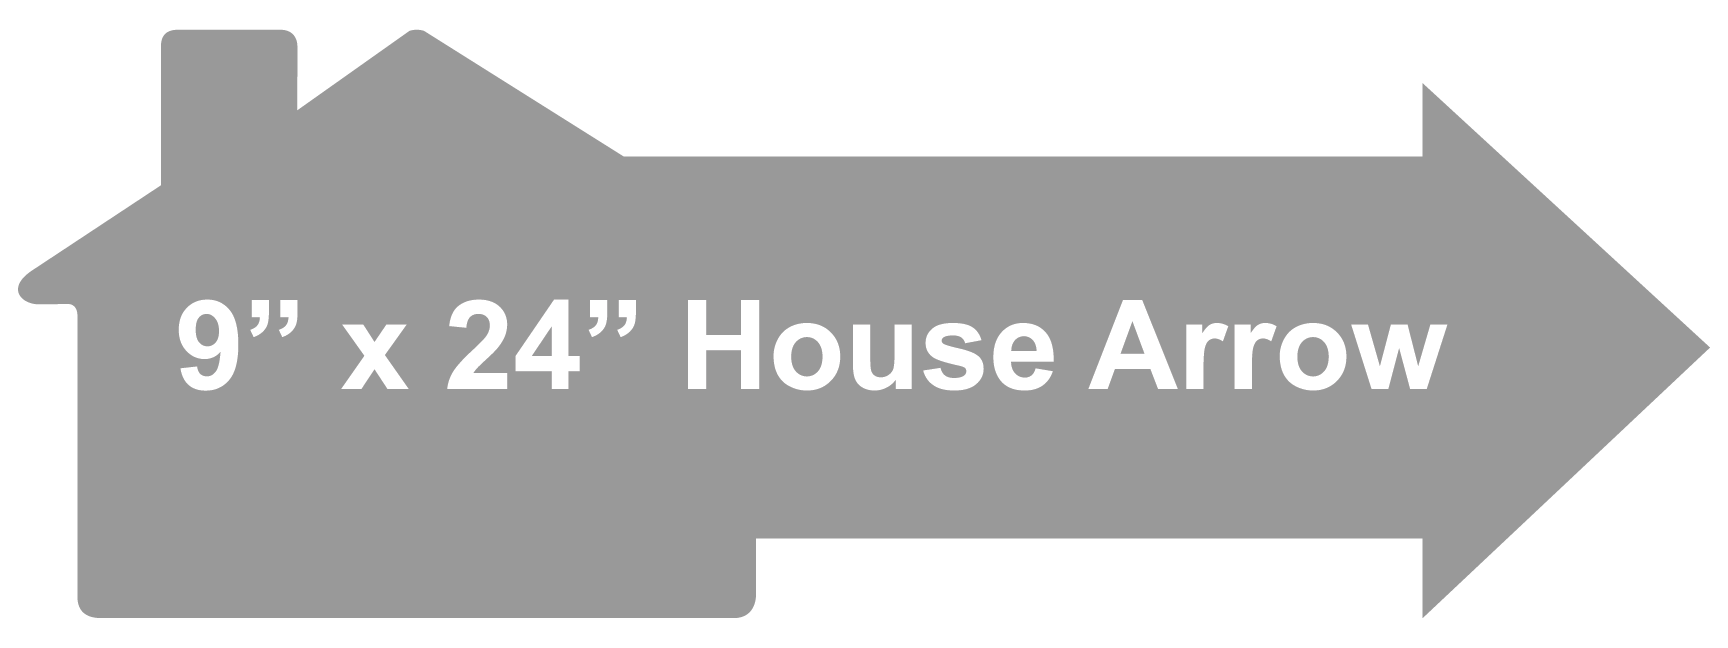 9 x 24 House Arrow